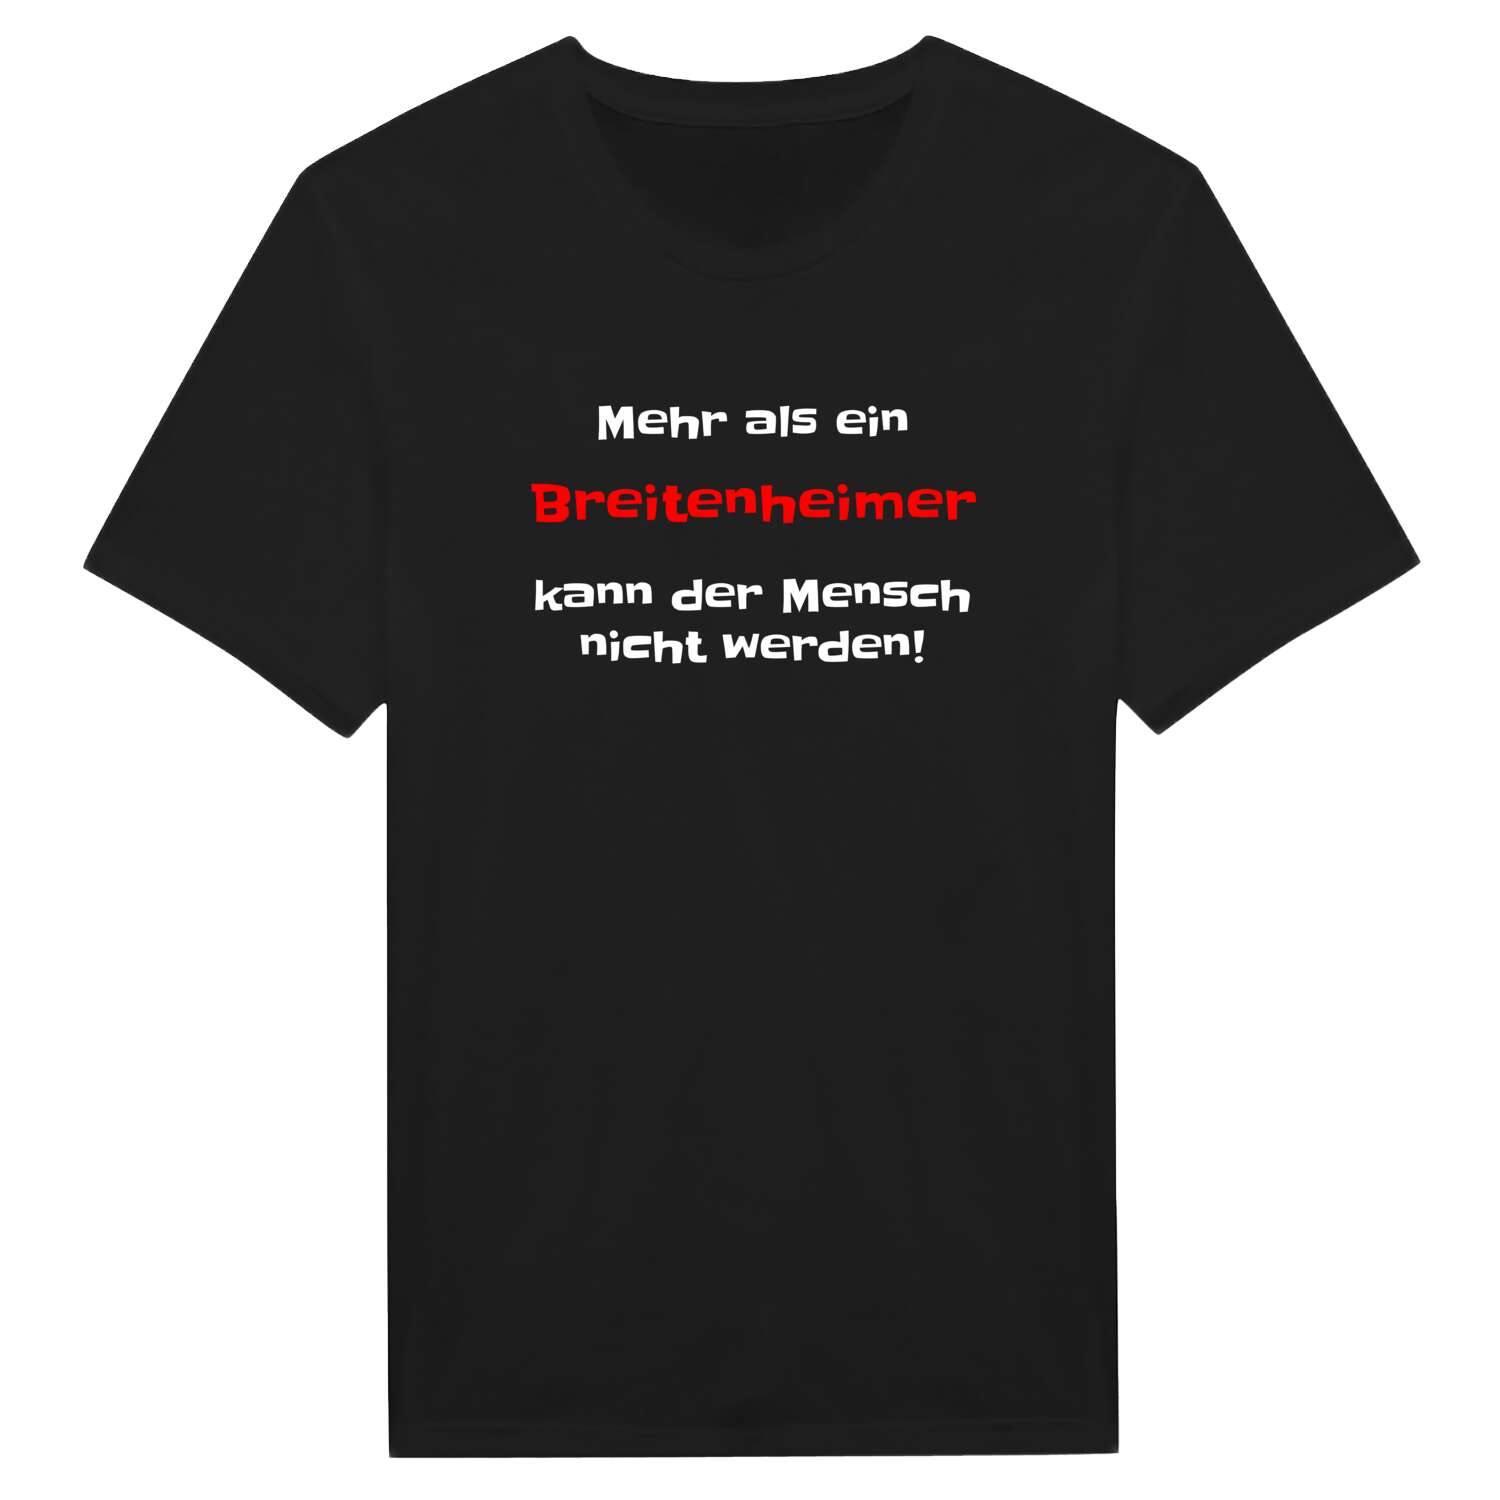 Breitenheim T-Shirt »Mehr als ein«